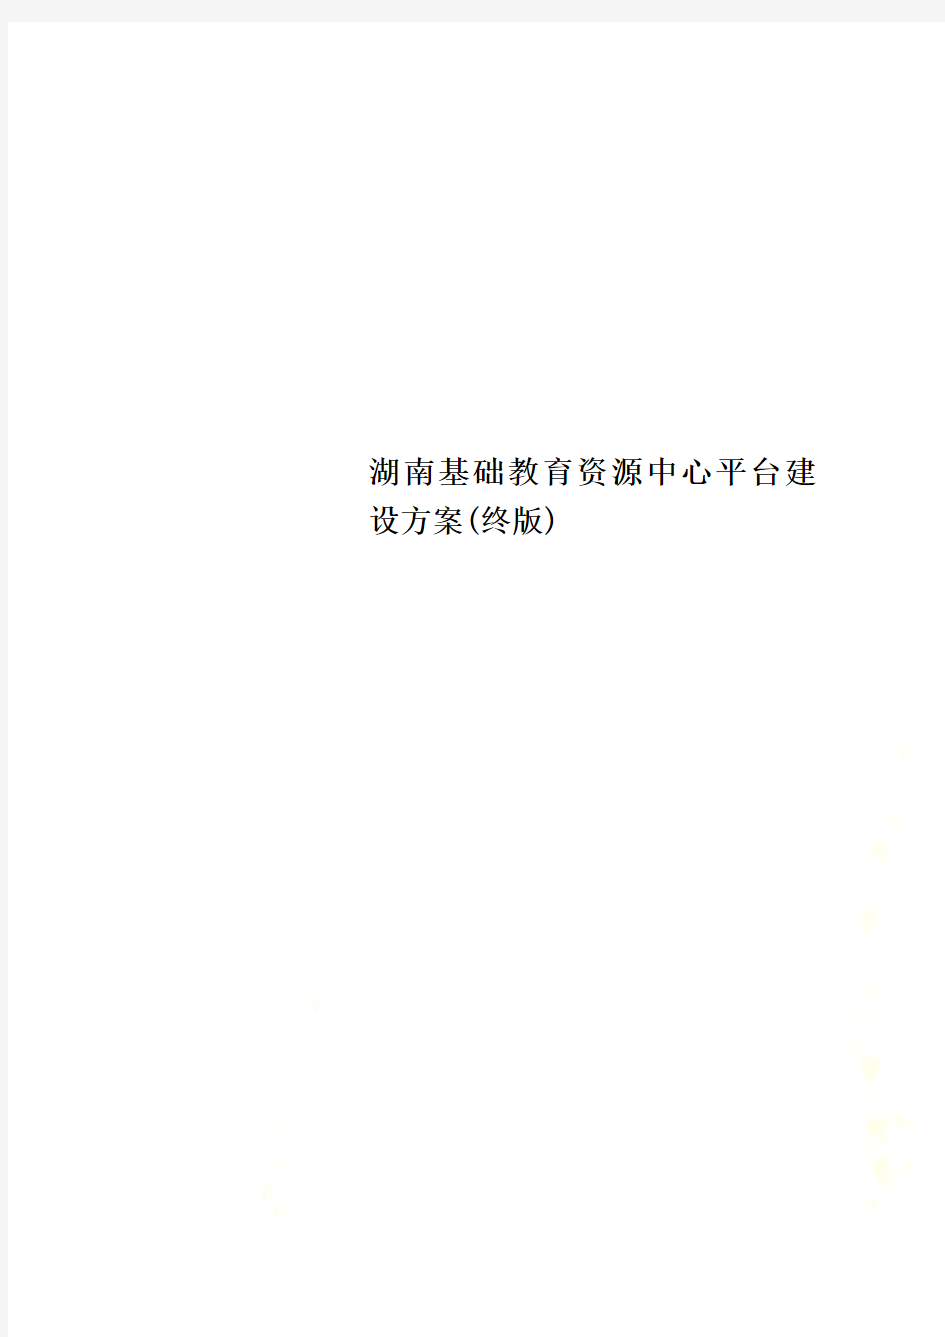 湖南基础教育资源中心平台建设方案(终版)